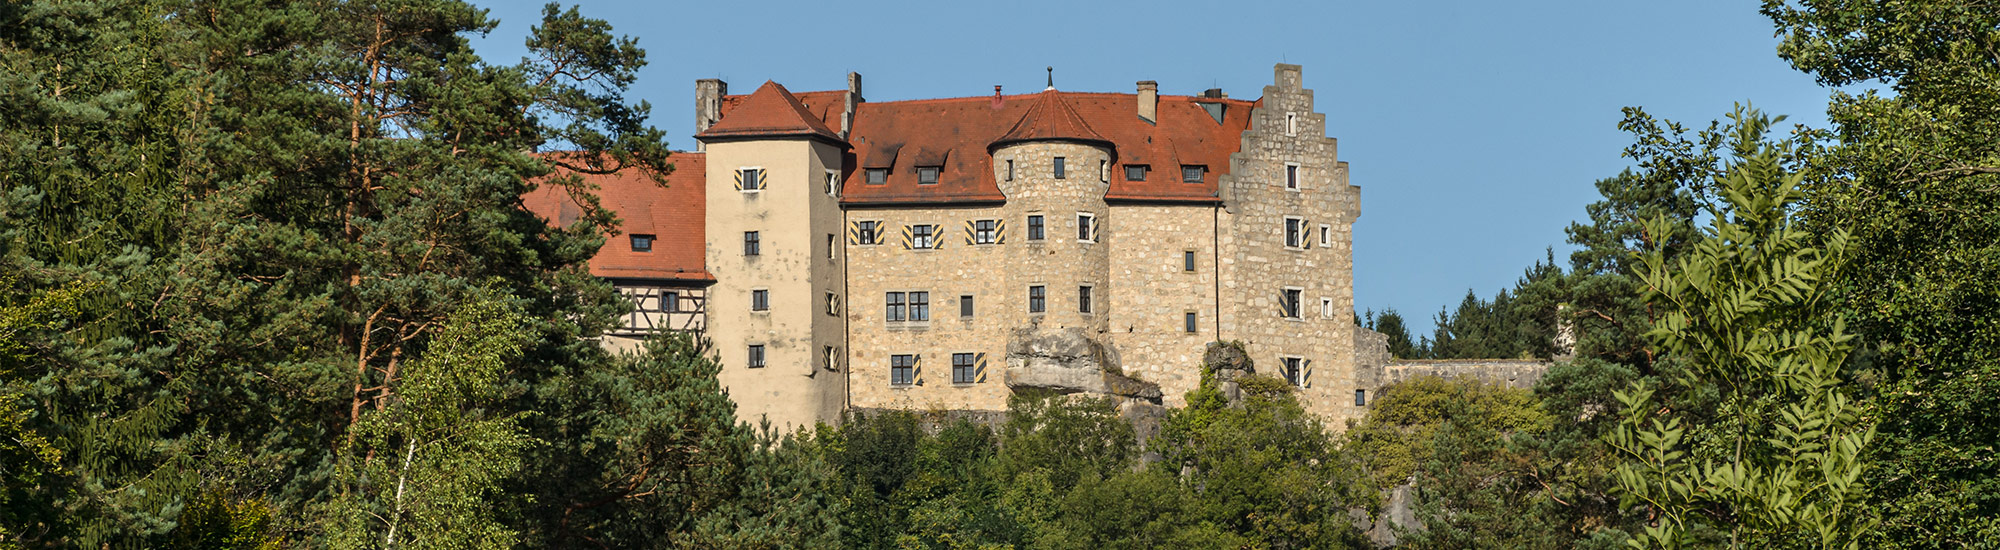 Burg Rabenstein 2